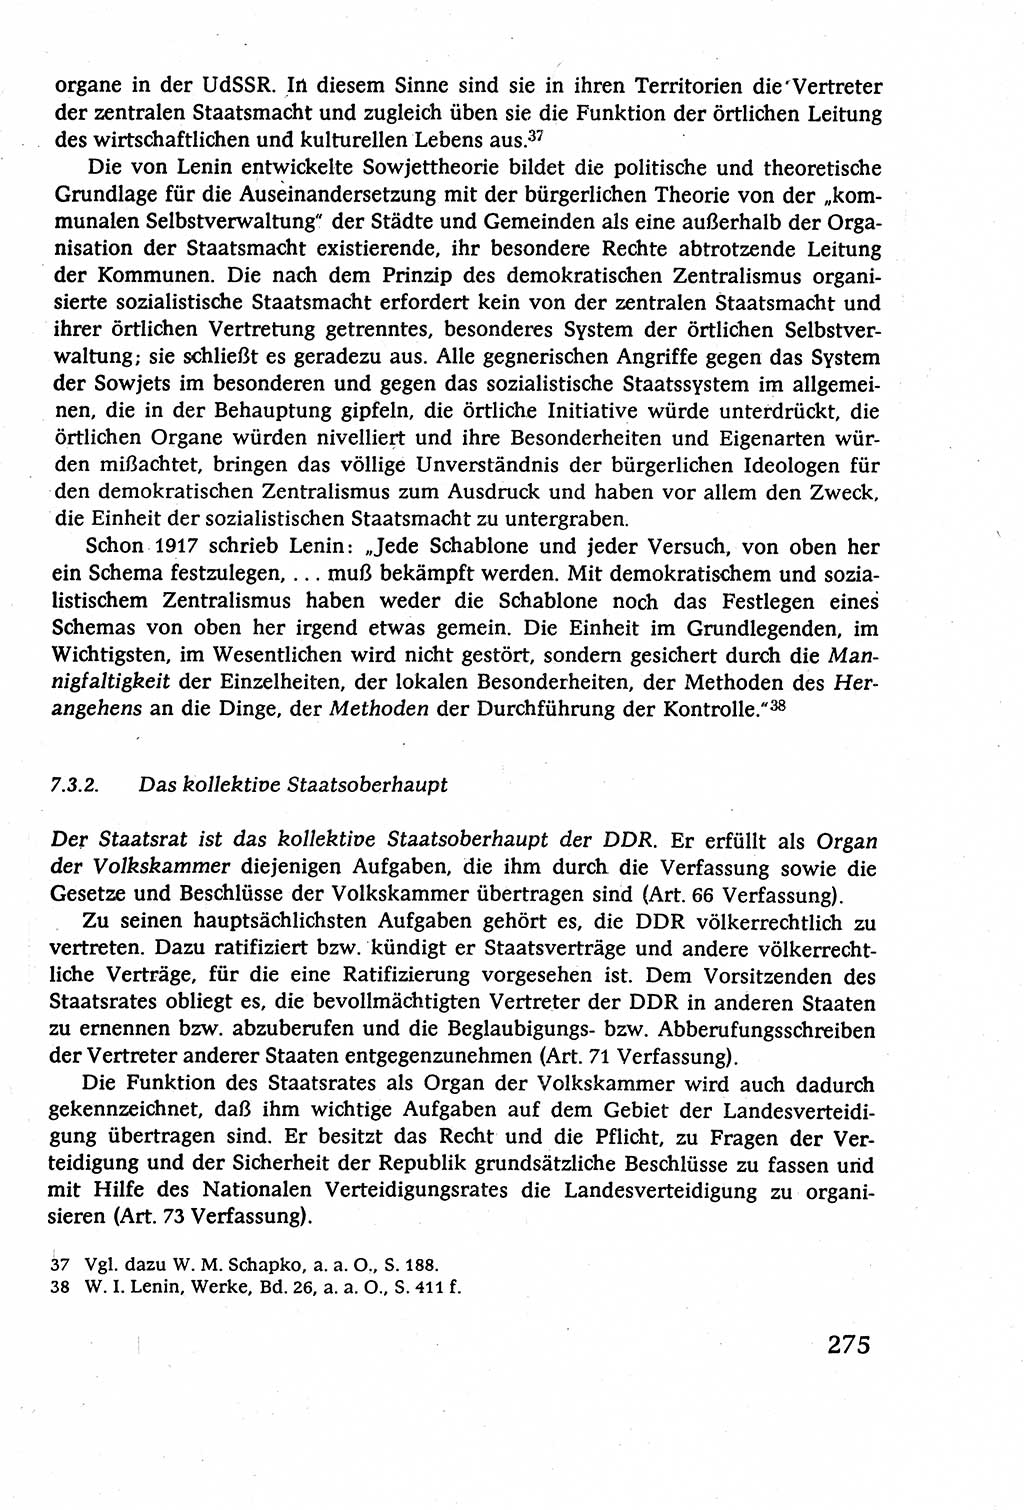 Staatsrecht der DDR (Deutsche Demokratische Republik), Lehrbuch 1977, Seite 275 (St.-R. DDR Lb. 1977, S. 275)